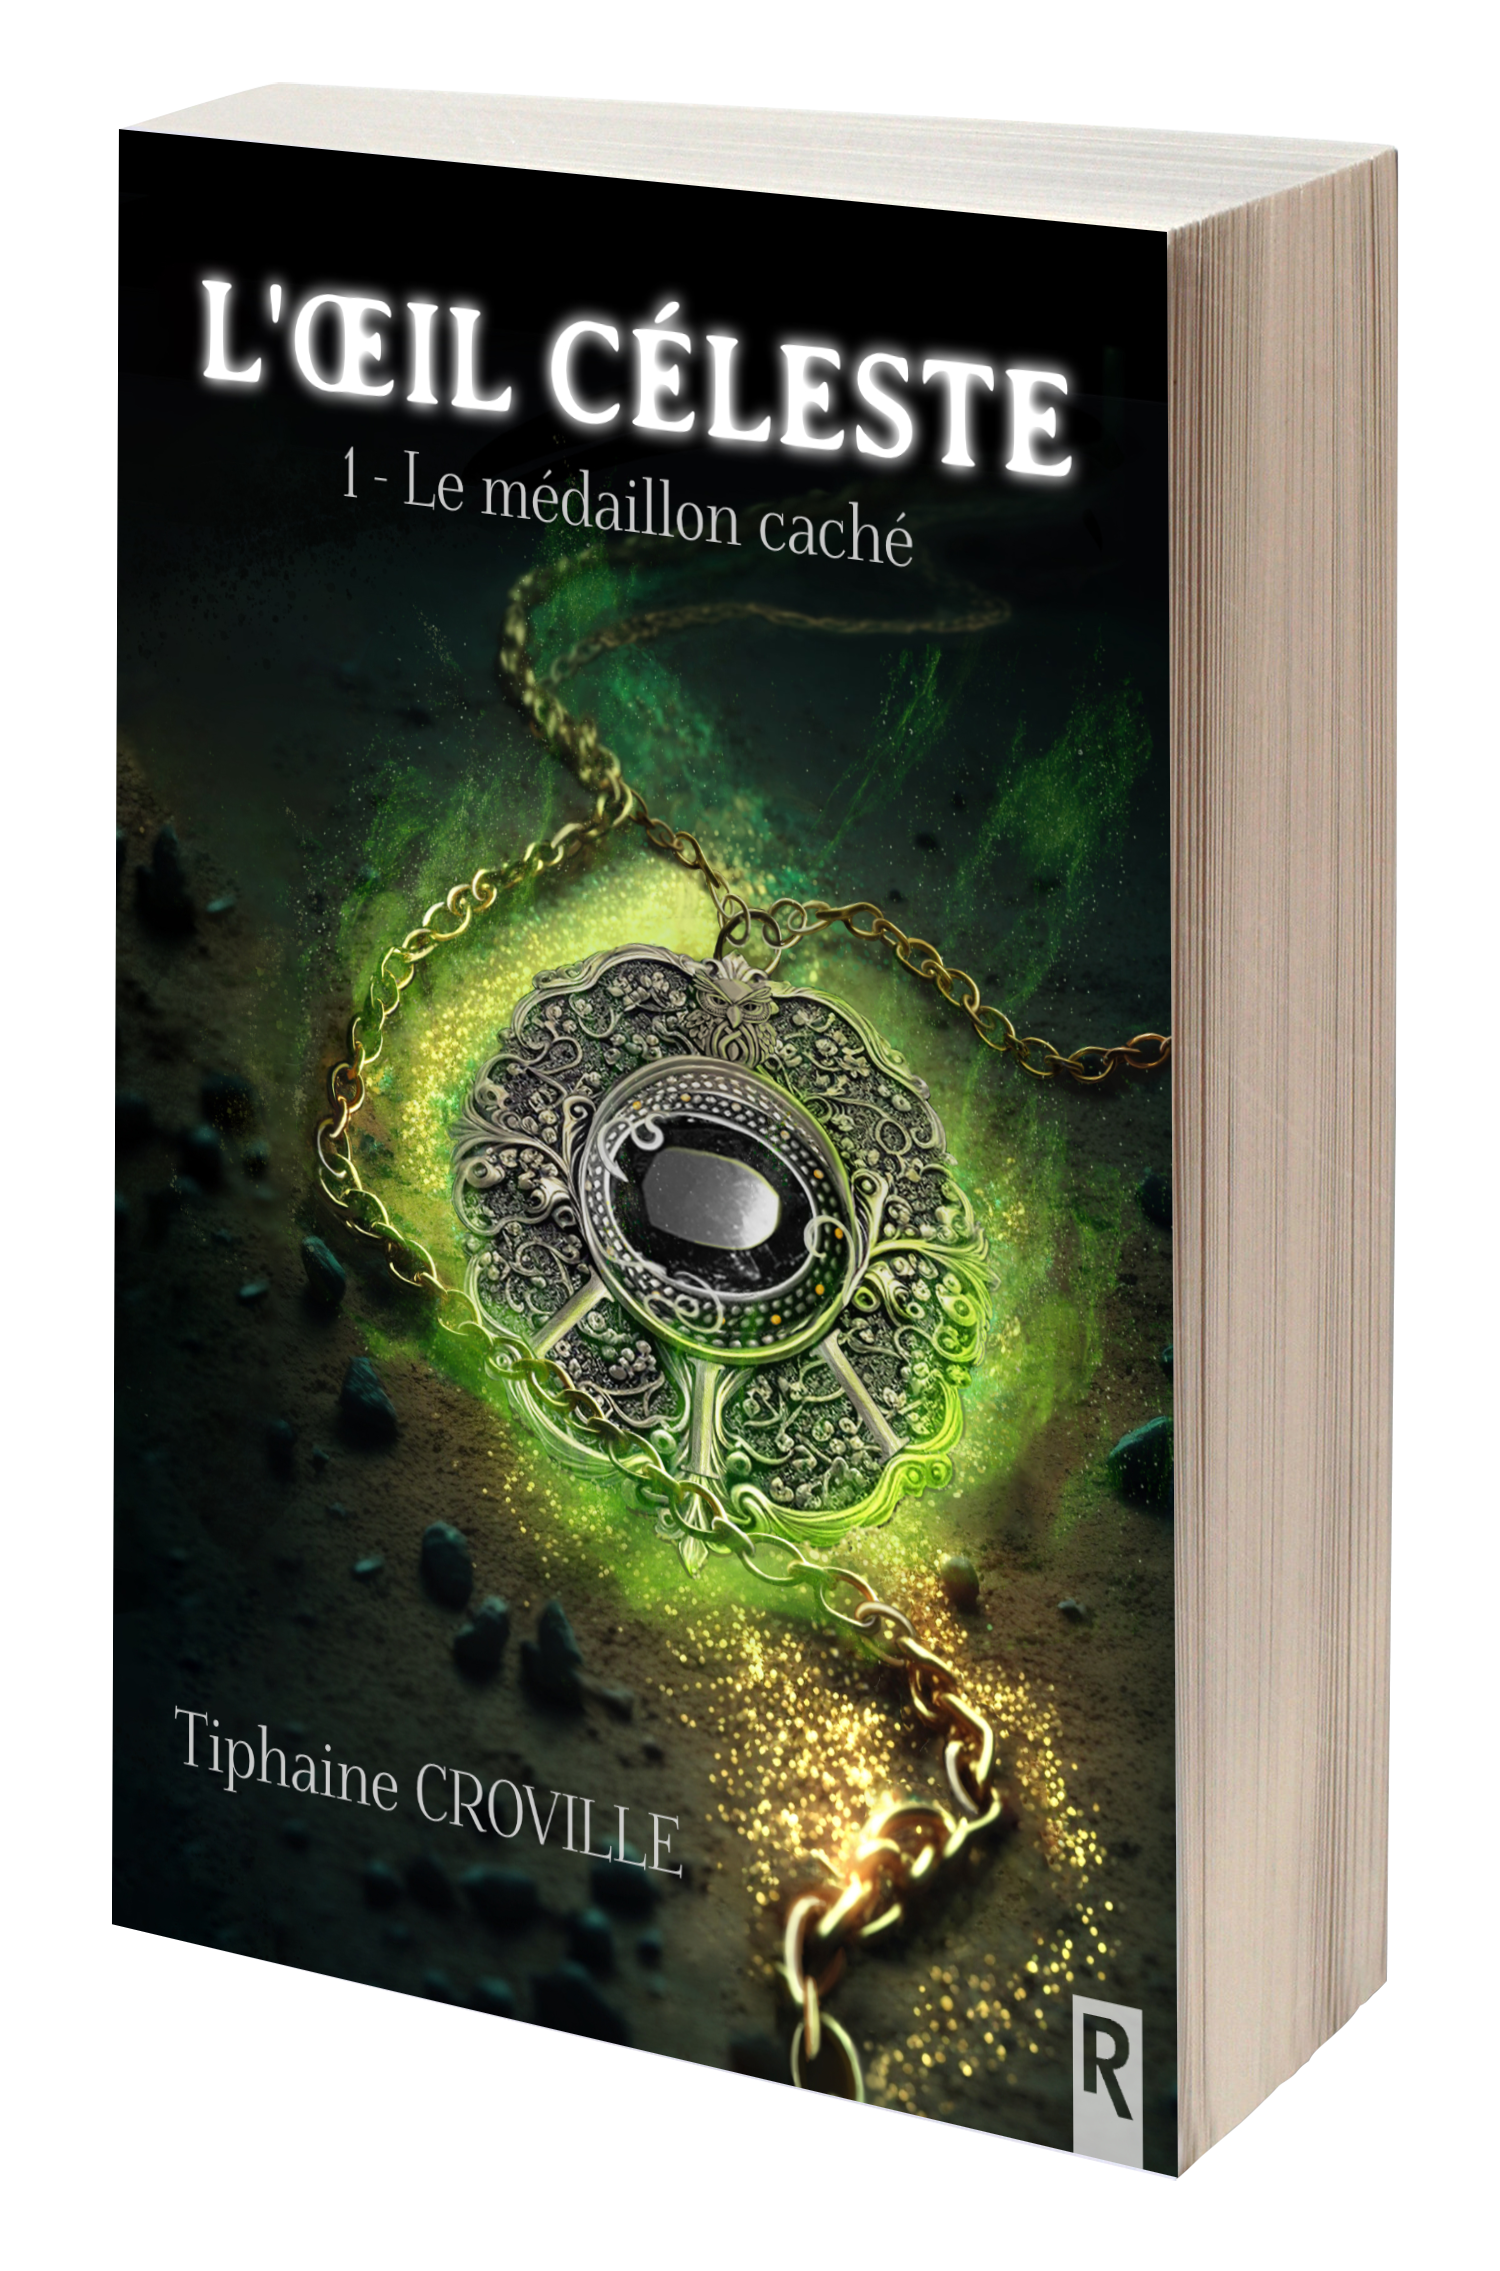 L'oeil céleste de Tiphaine Croville, une saga en 2 tomes où il est question d'amour interdit, de quête du Graal, de sorciers, de nymphes et de satyres.